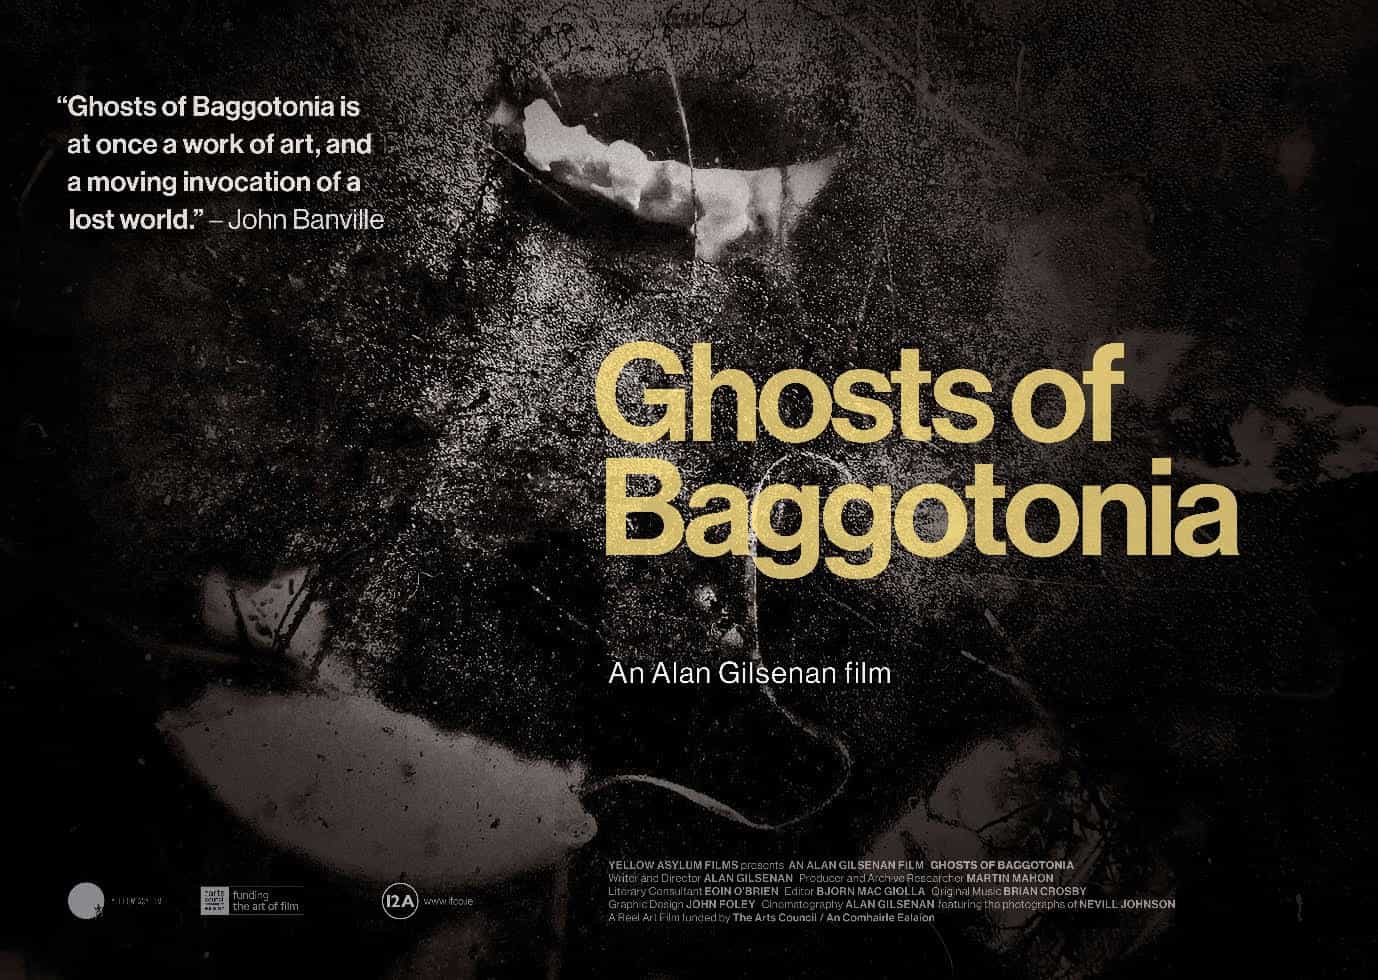 Ghosts of Baggotonia